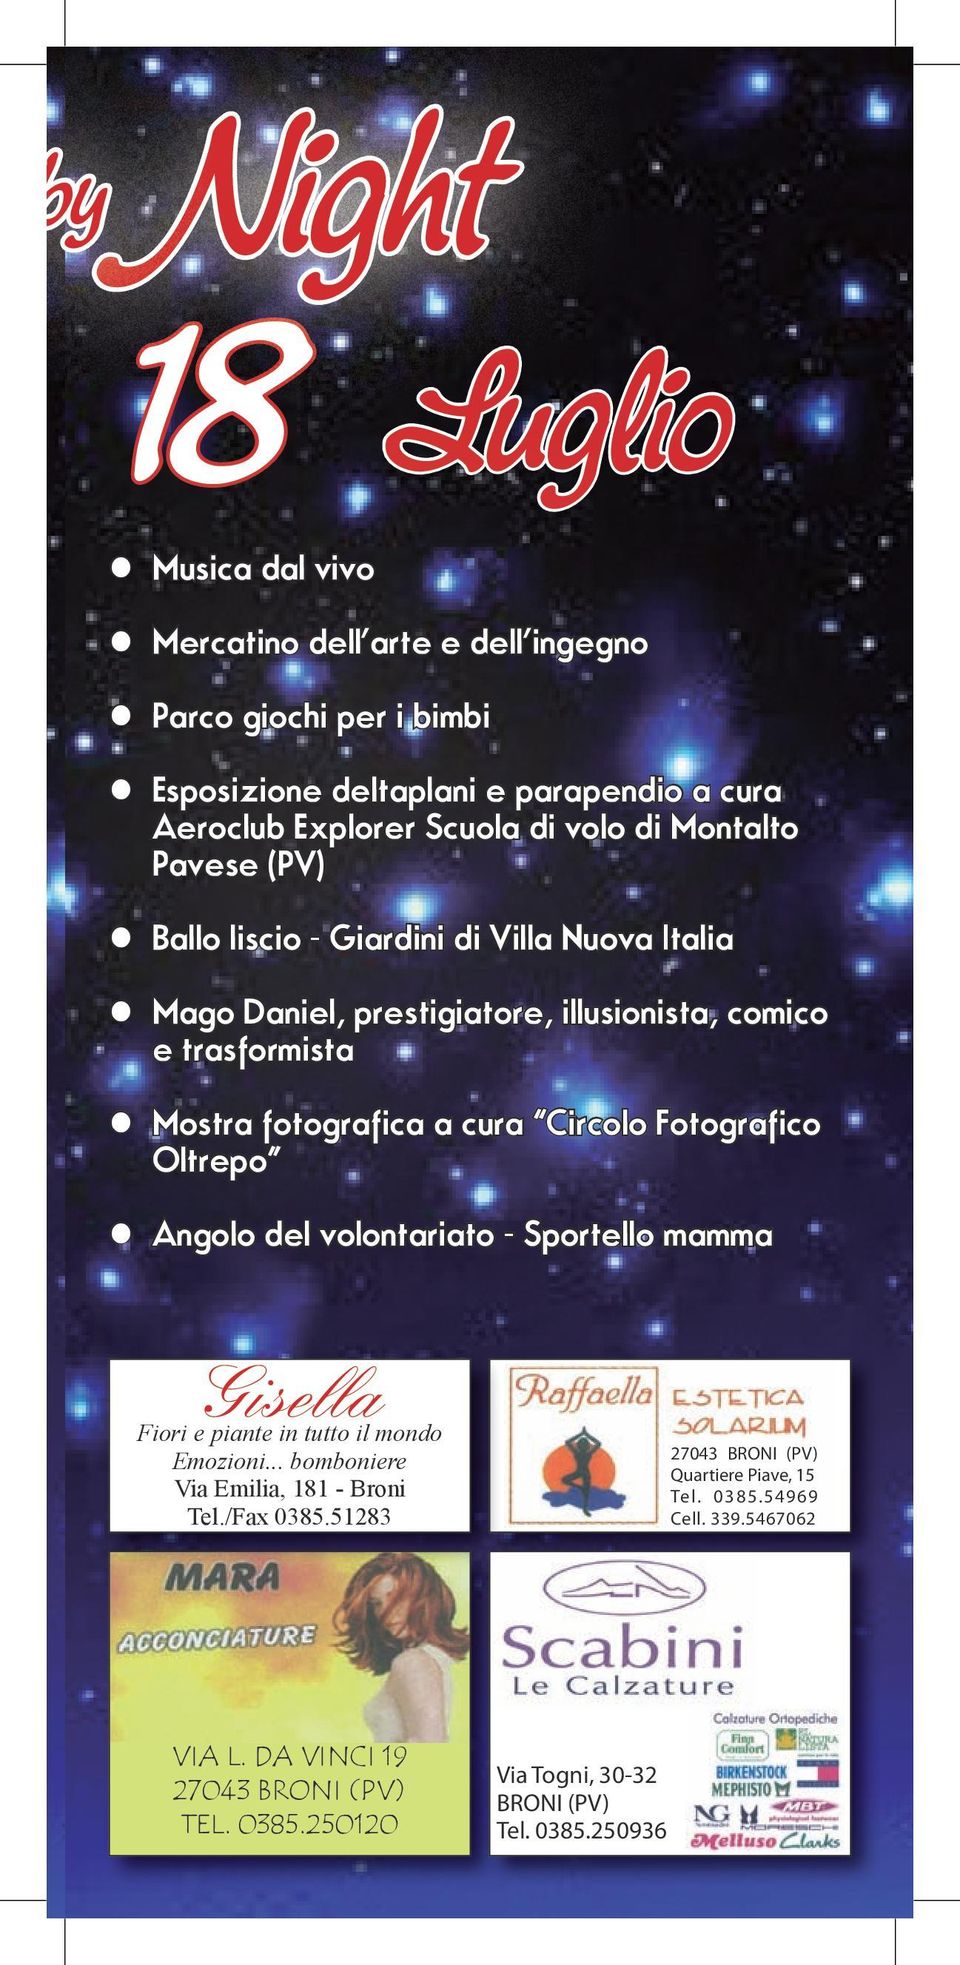 Sportello mamma Gisella Fiori e piante in tutto il mondo Emozioni... bomboniere Via Emilia, 181 - Broni Tel./Fax 0385.